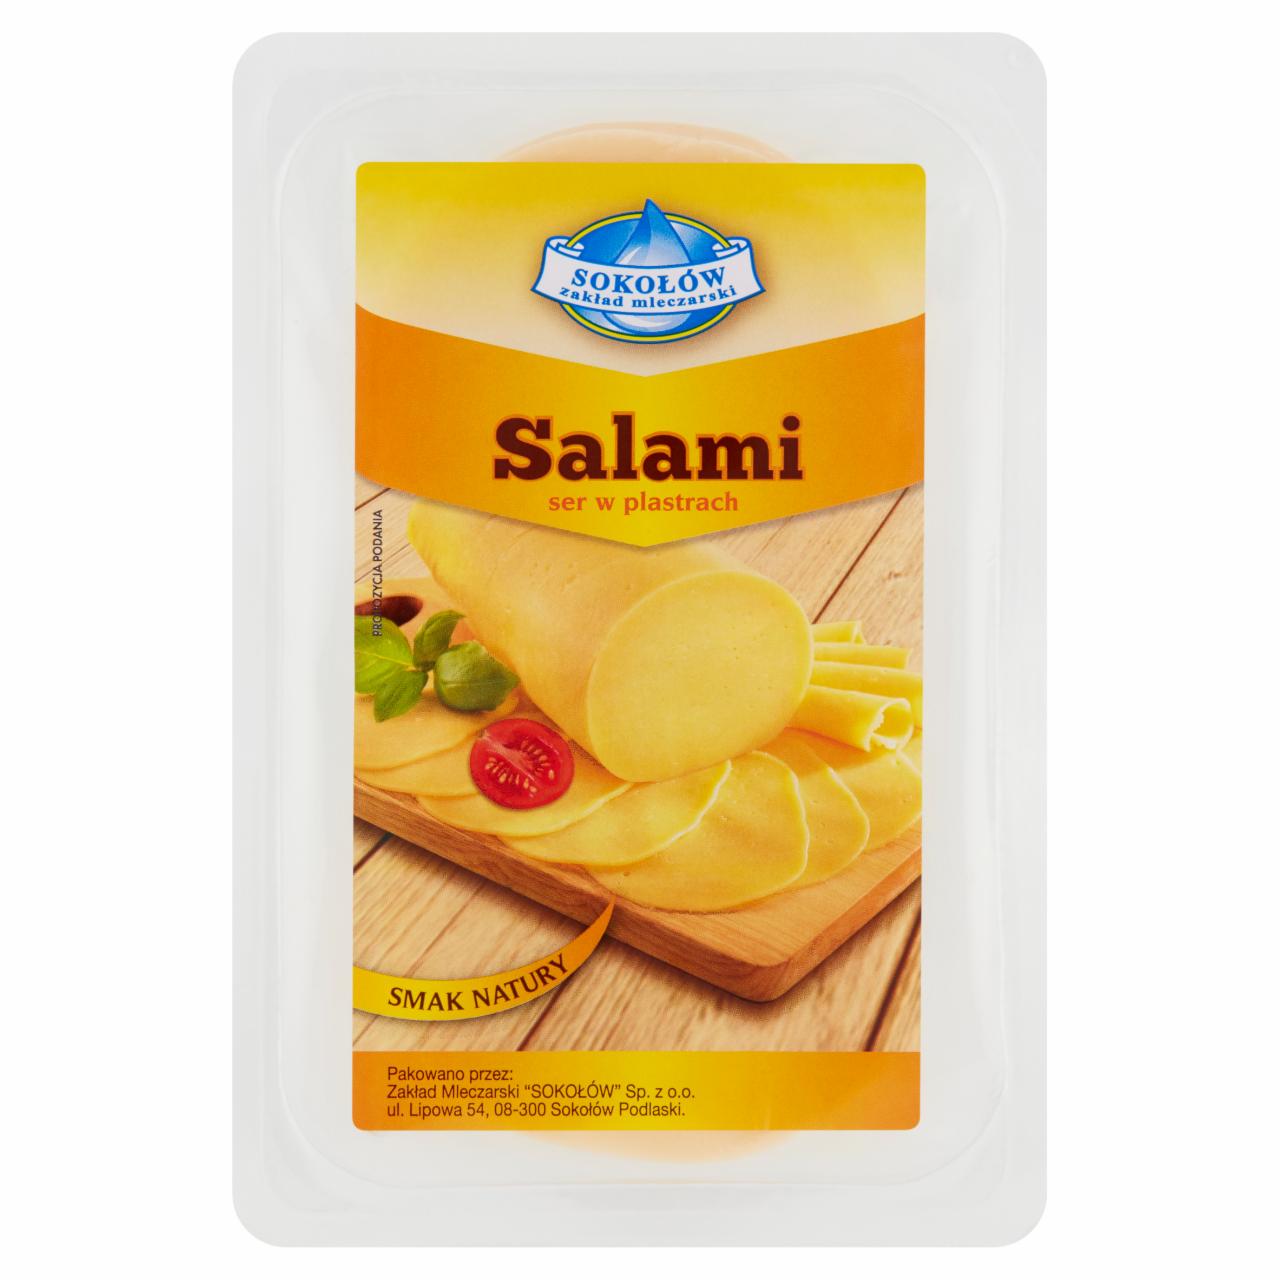 Zdjęcia - Sokołów Salami ser w plastrach 150 g